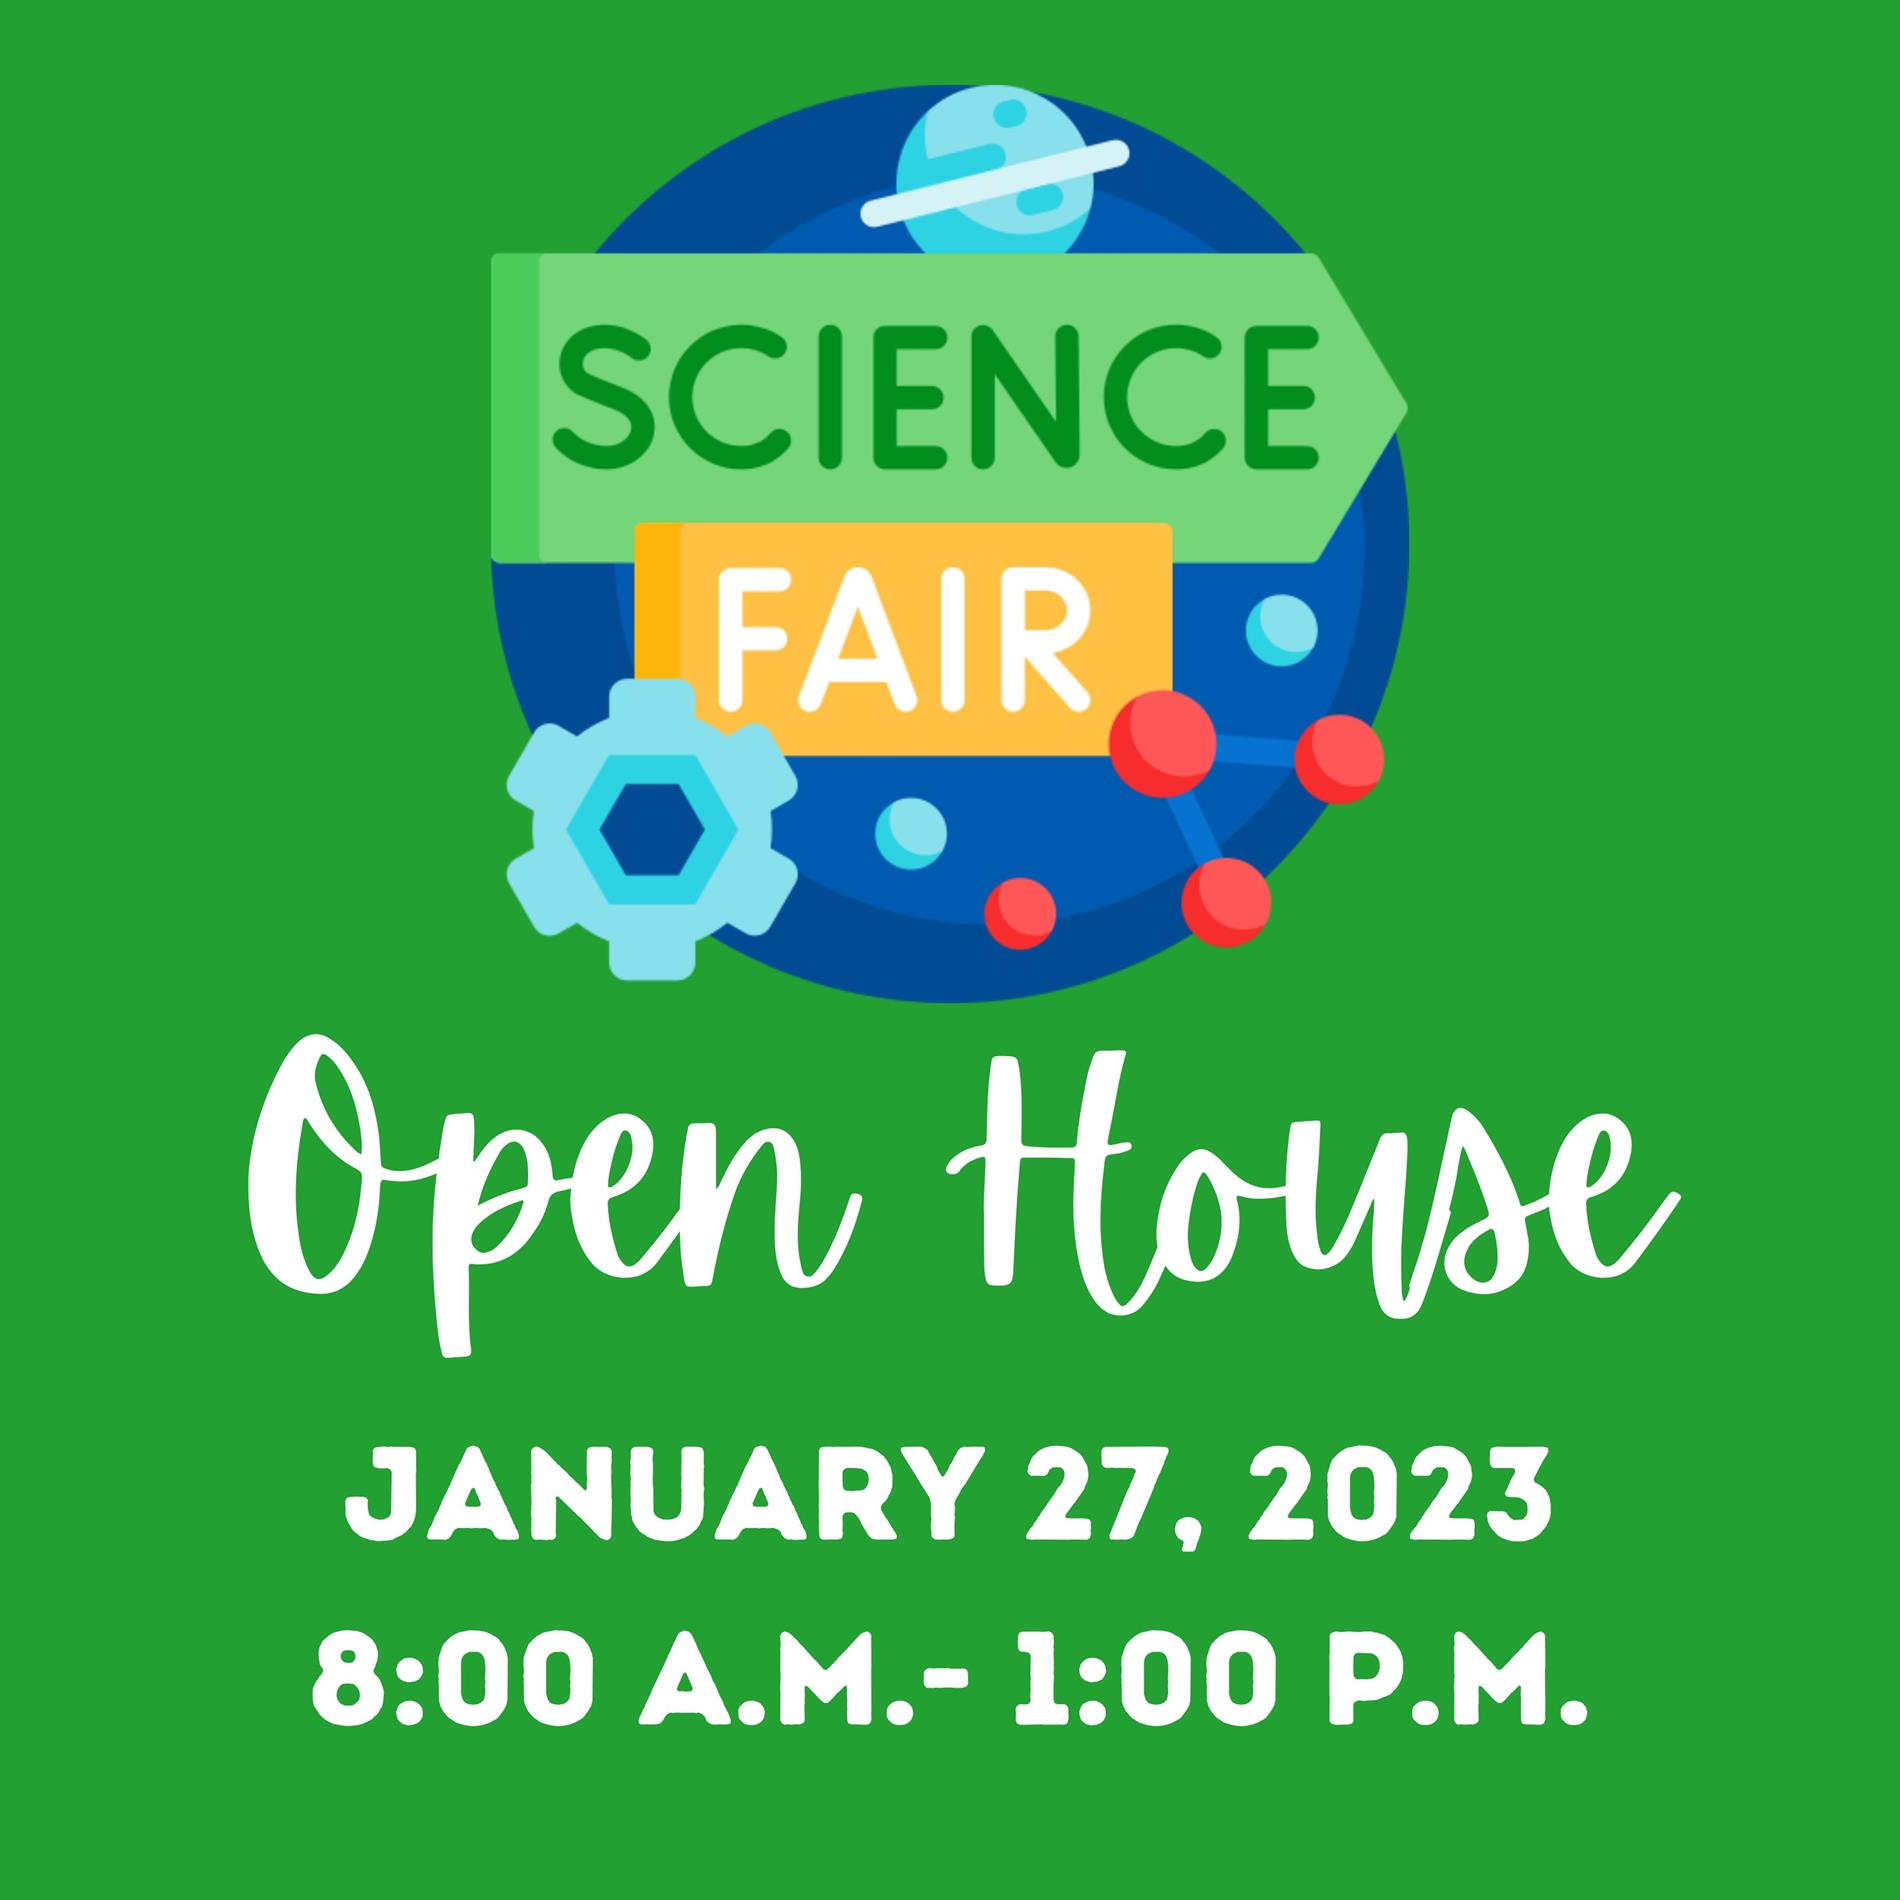 Science Fair open house